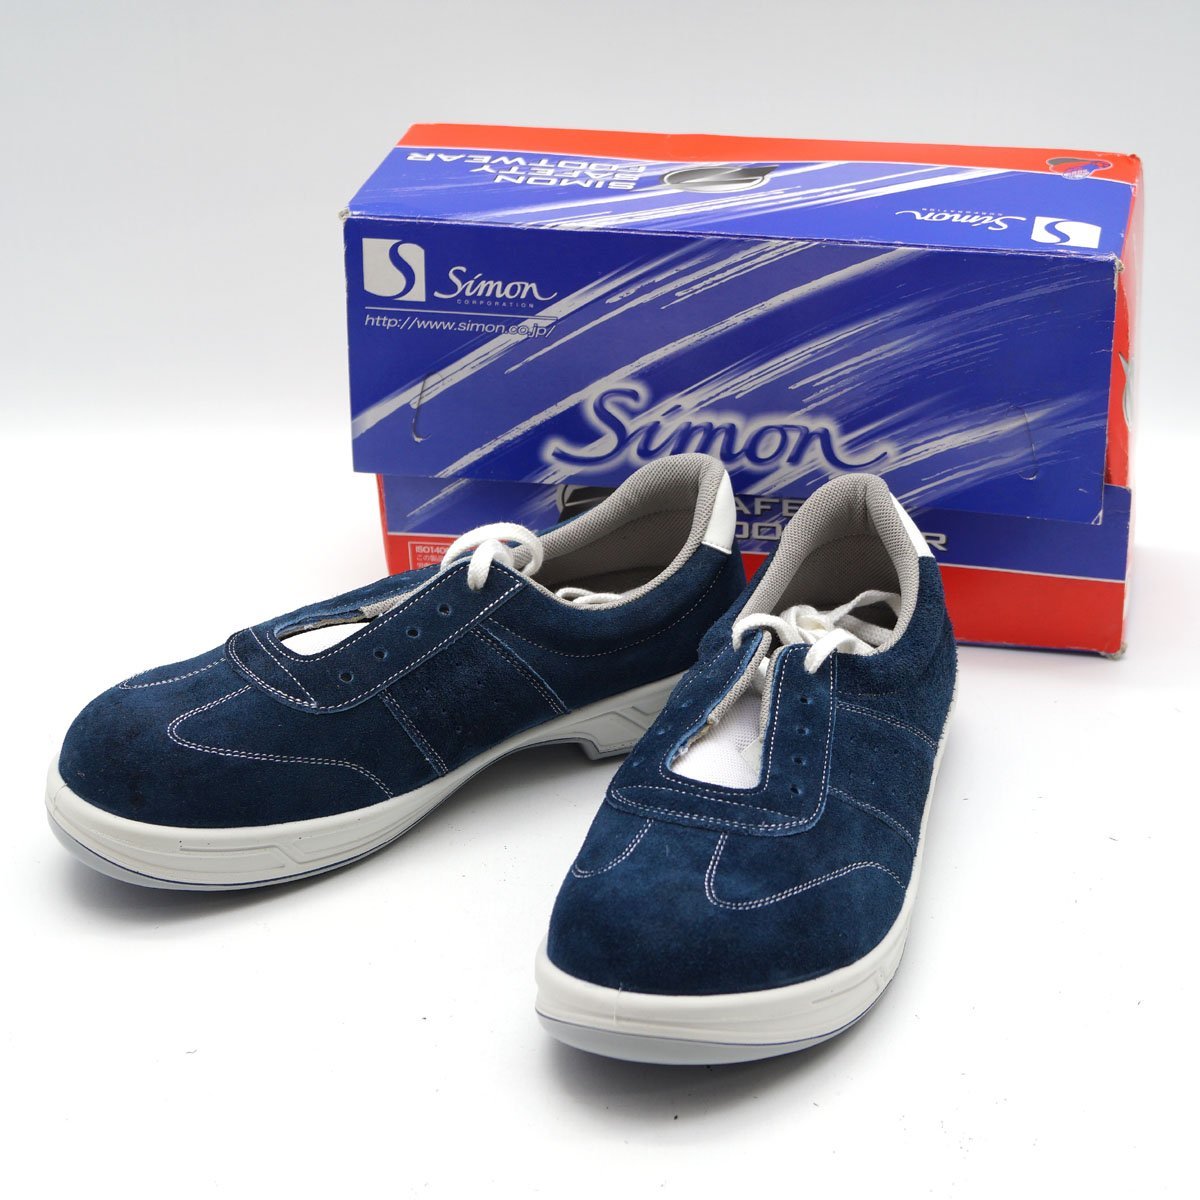 Shimon シモン 安全靴 短靴 SS11BV 26.5cm ブルー 帯電防止機能付き [H800450]